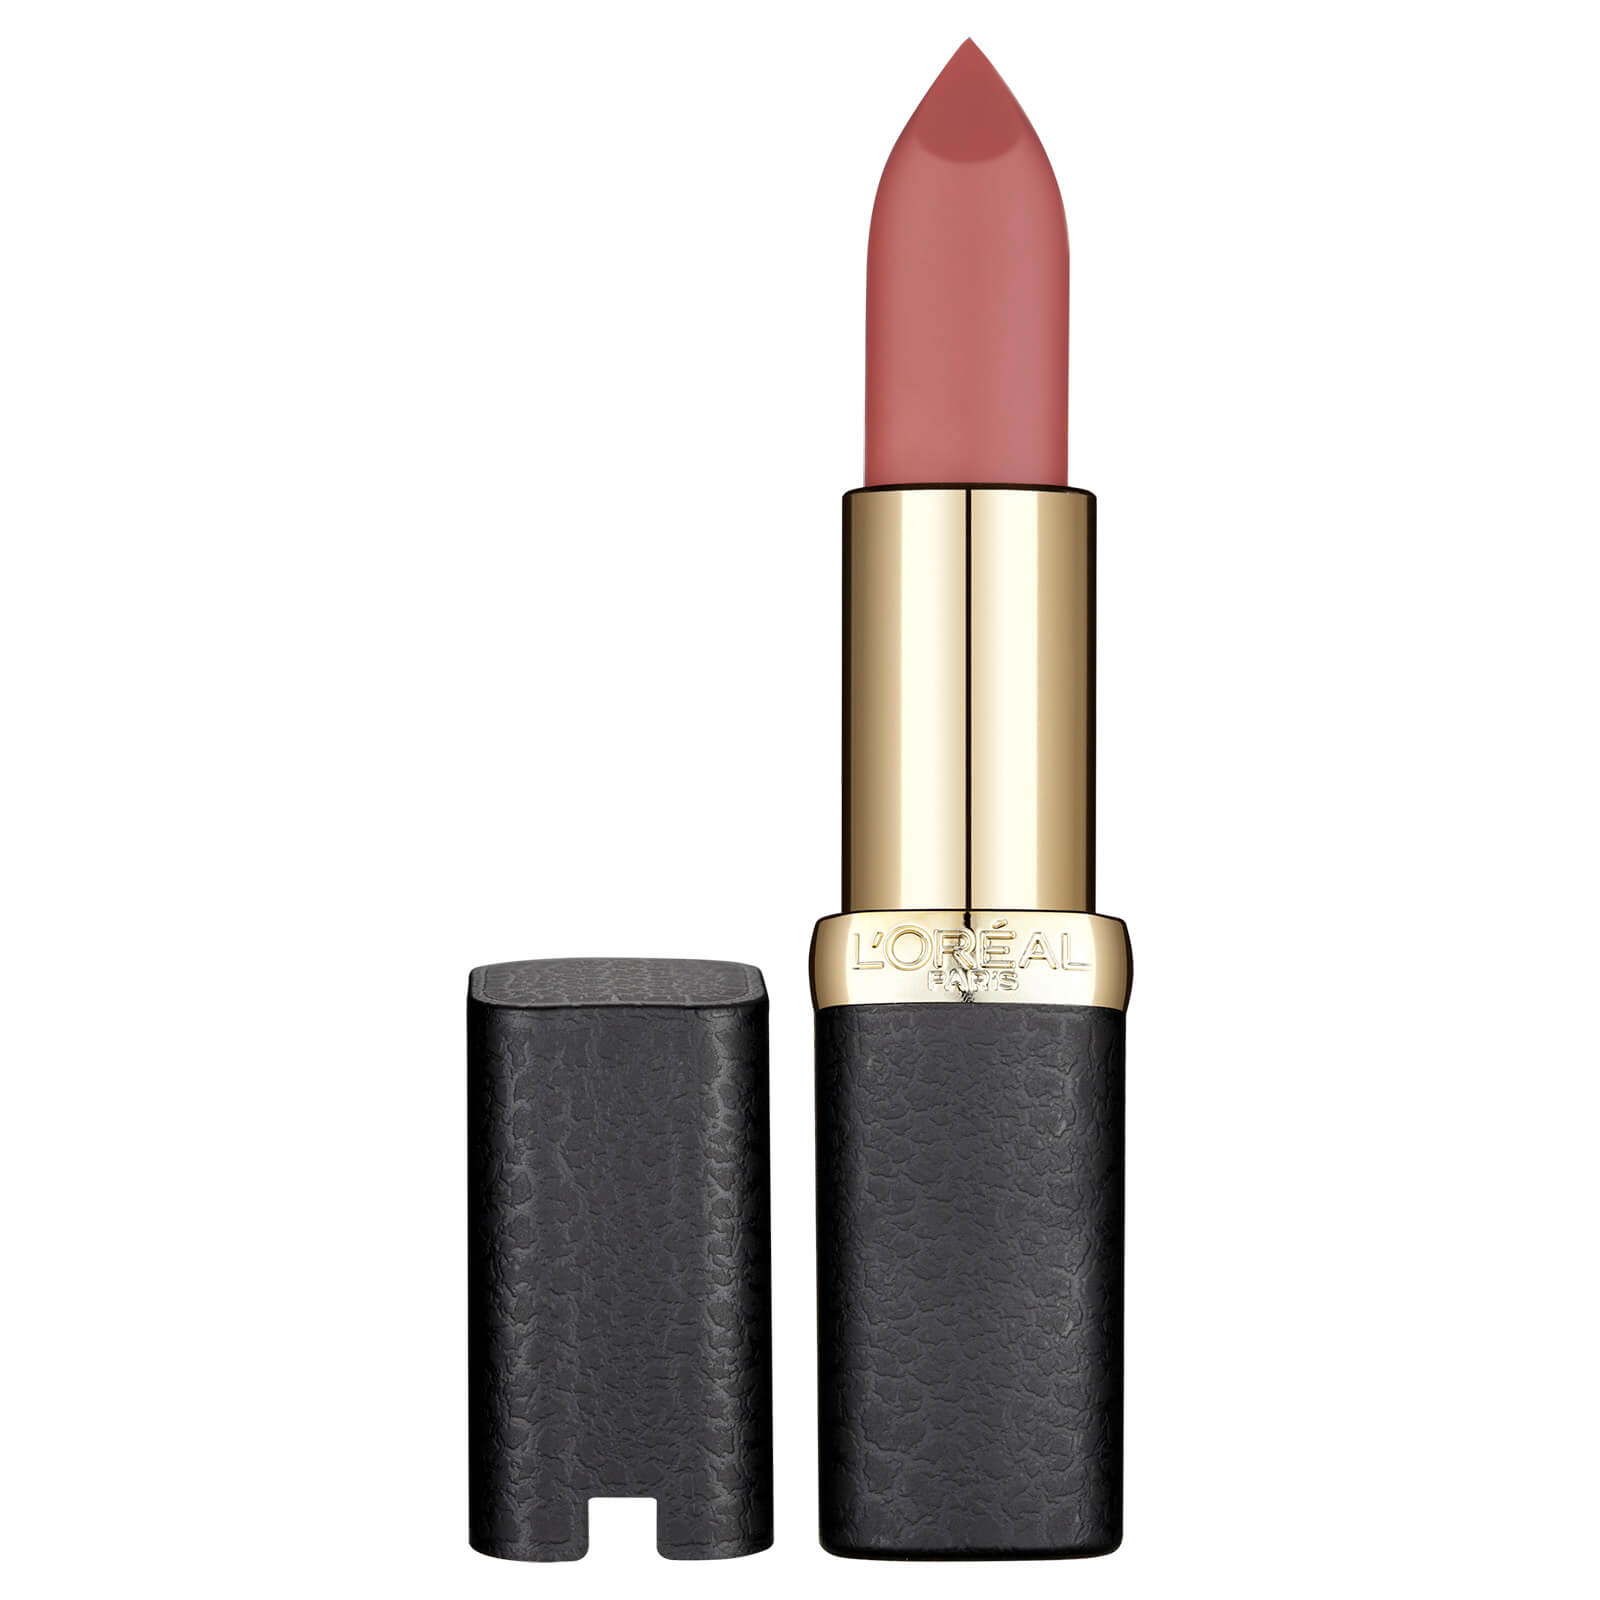 L'Oréal Paris Color Riche Matte Addiction Lipstick 4.8g (Various Shades) - 13 636 Mahogany Studs